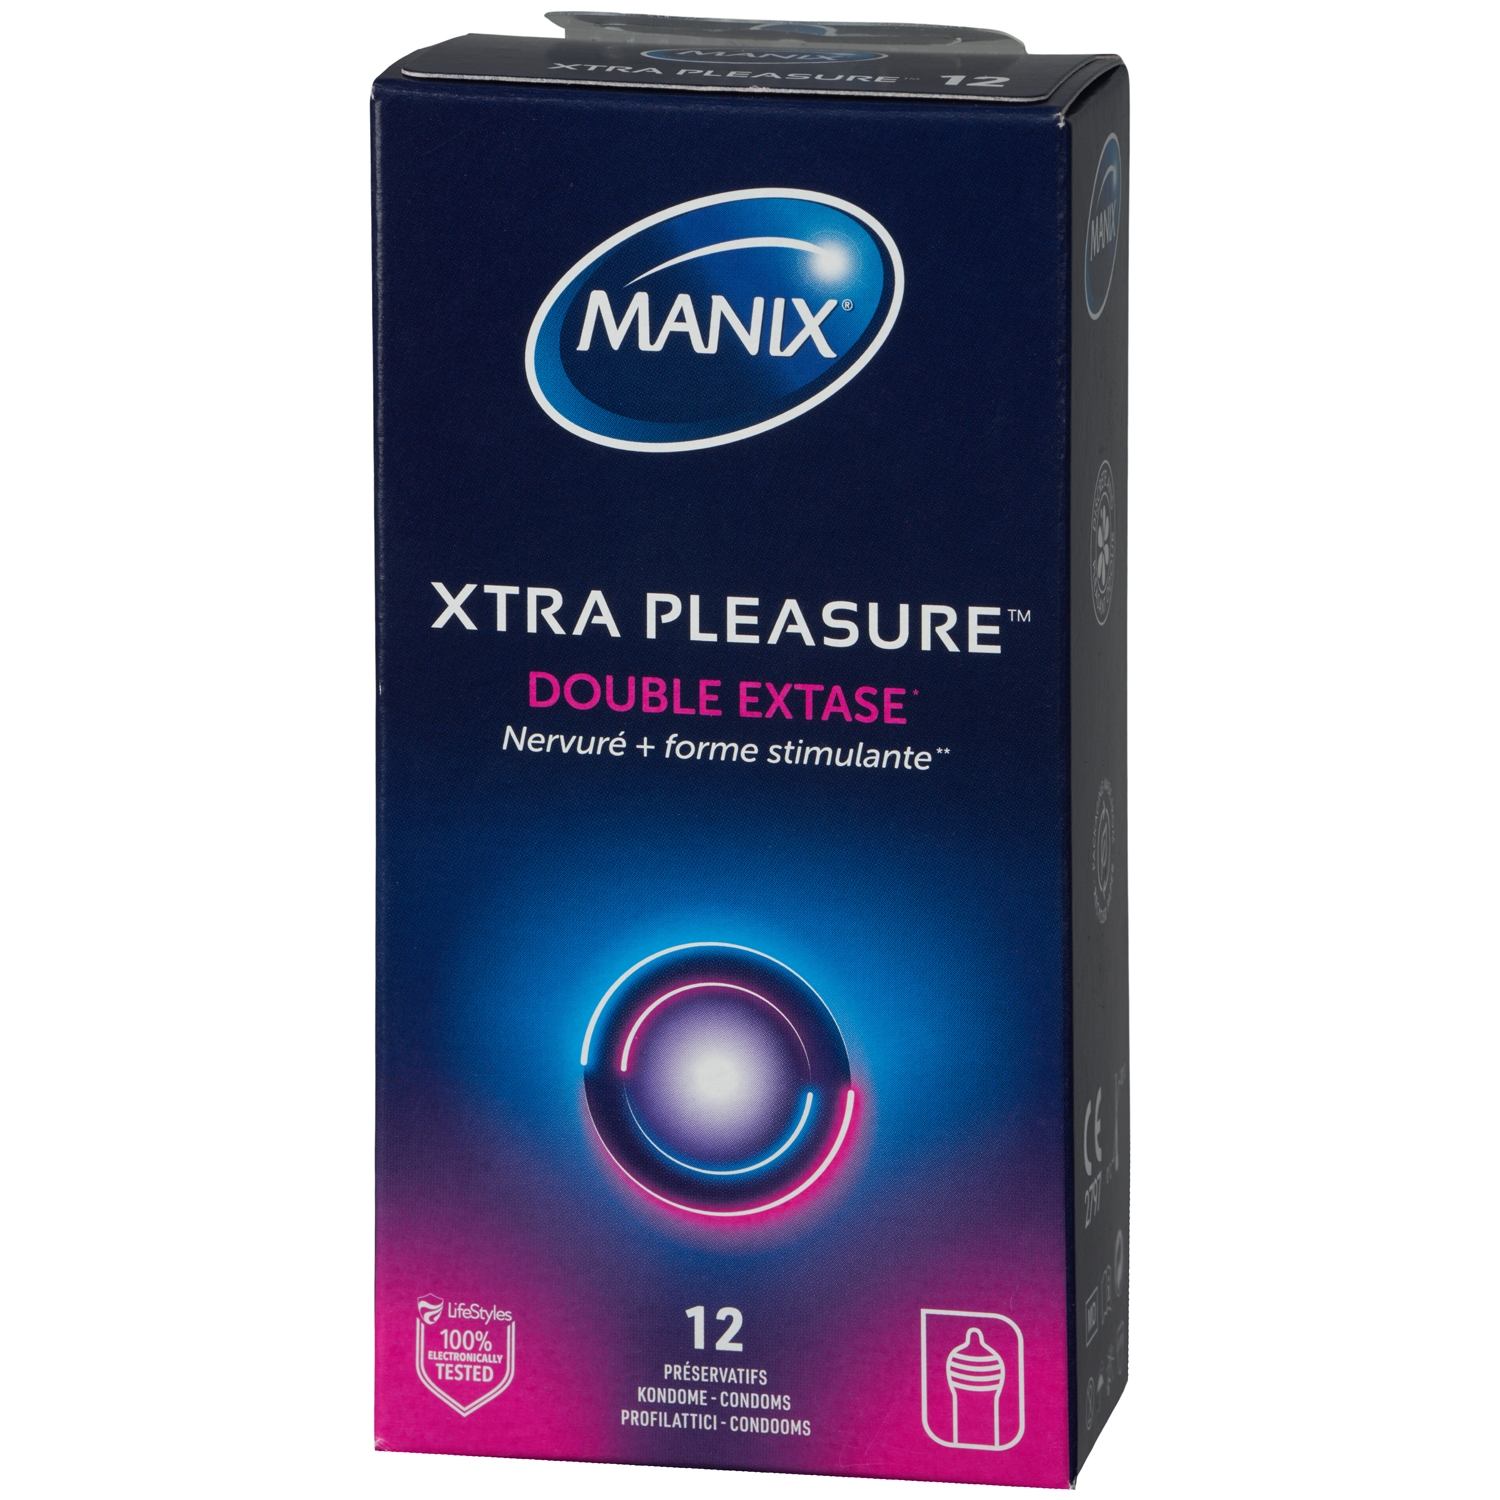 Manix Xtra Pleasure Double Extase Kondomer 12 stk. - Klar thumbnail